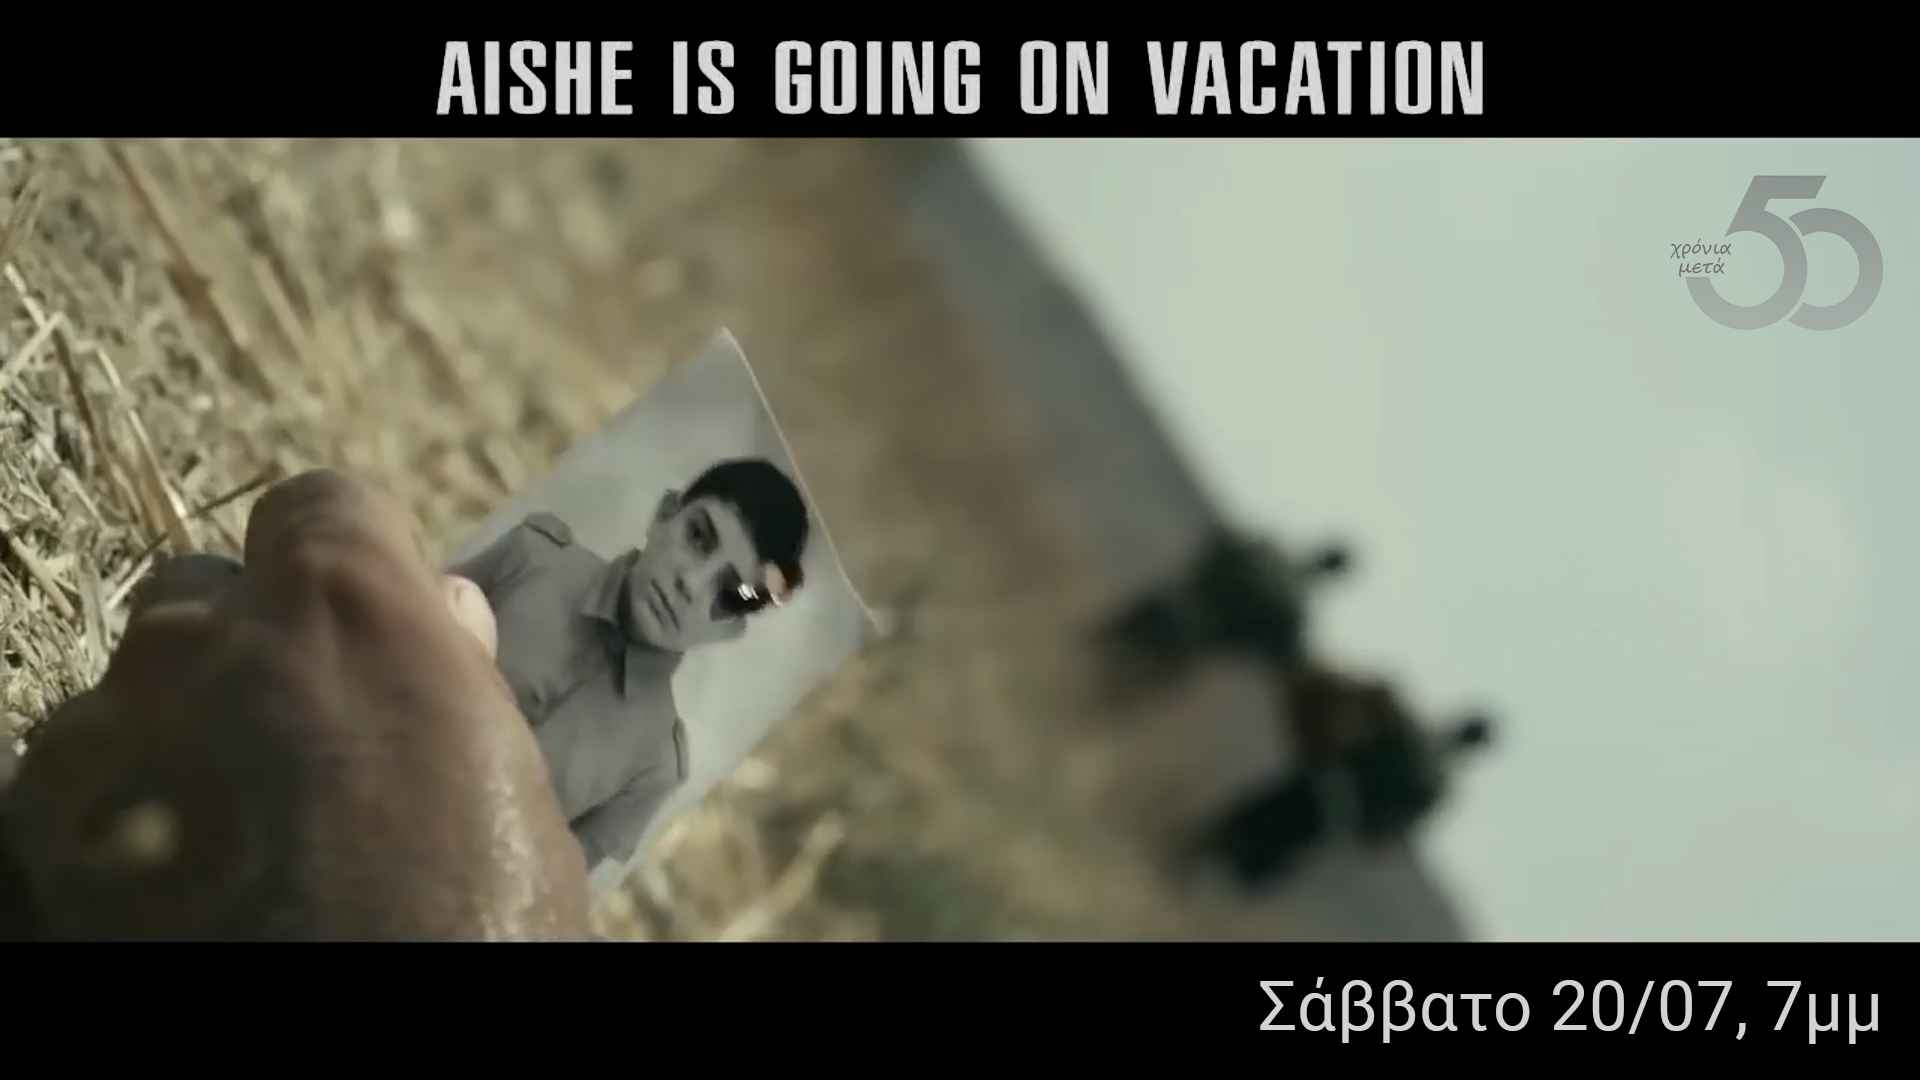 "50 Χρόνια μετά..." - "Aishe is going on vacation" | Σάββατο 20/07, 7μμ